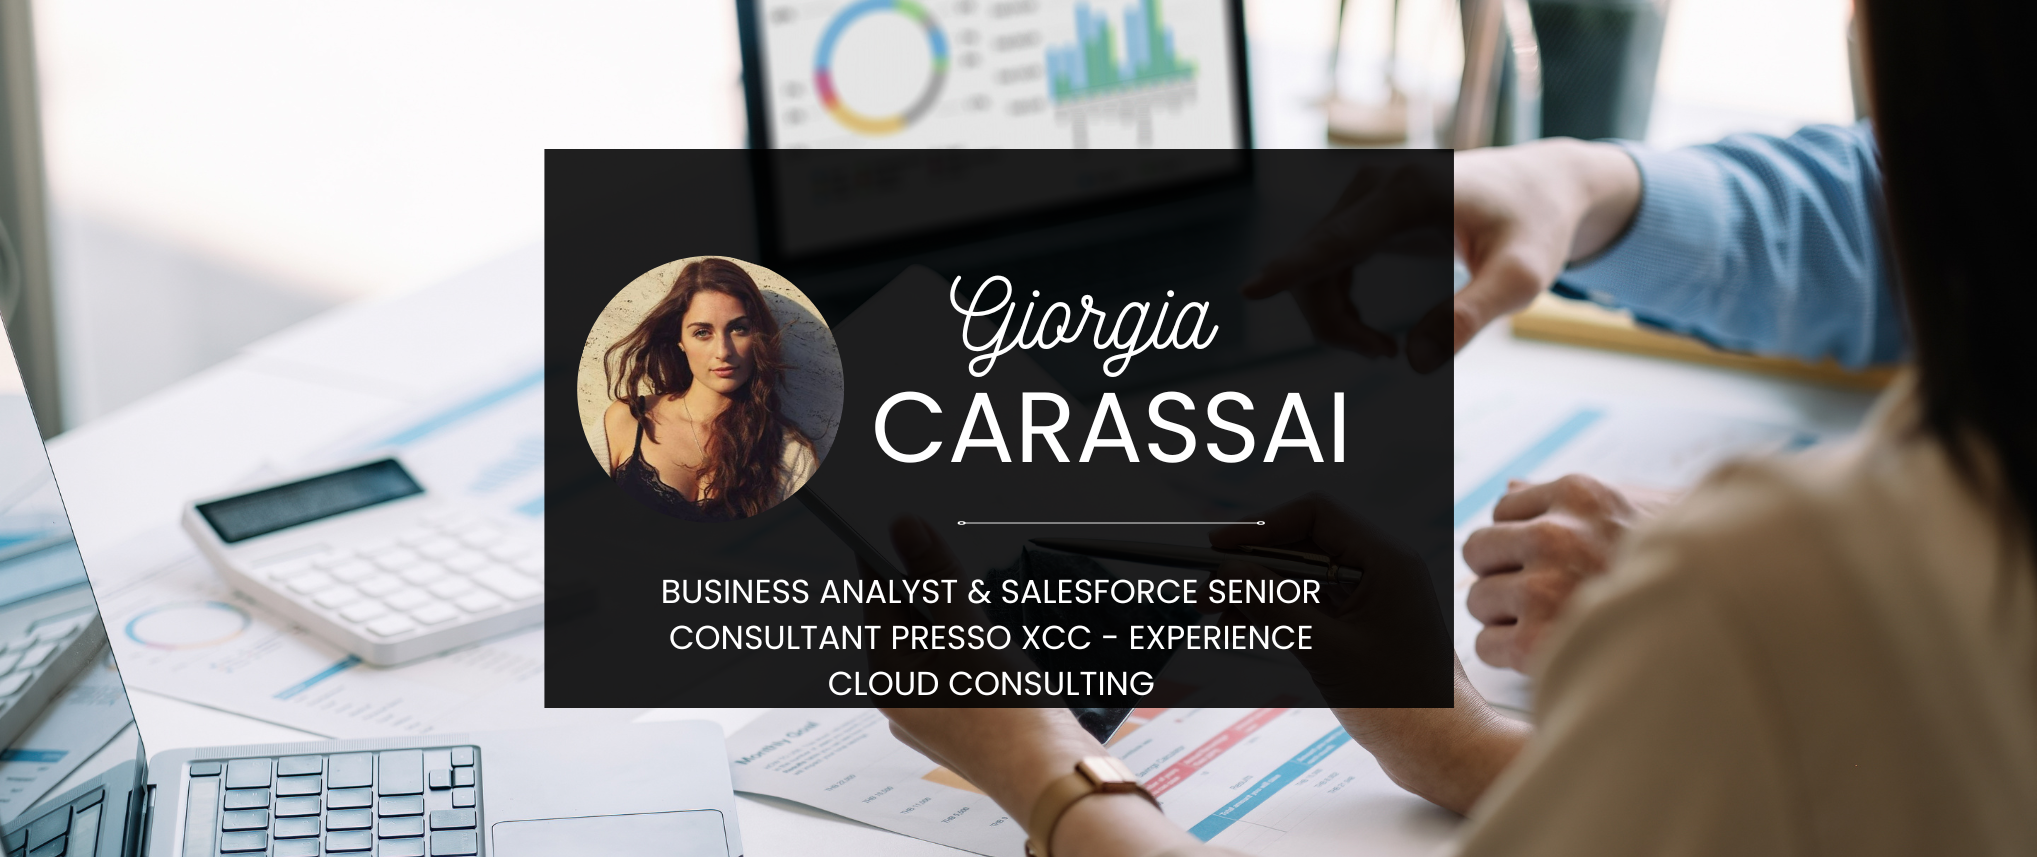 Rubrica XCC, il successo parte dai Consultant: Giorgia Carassai